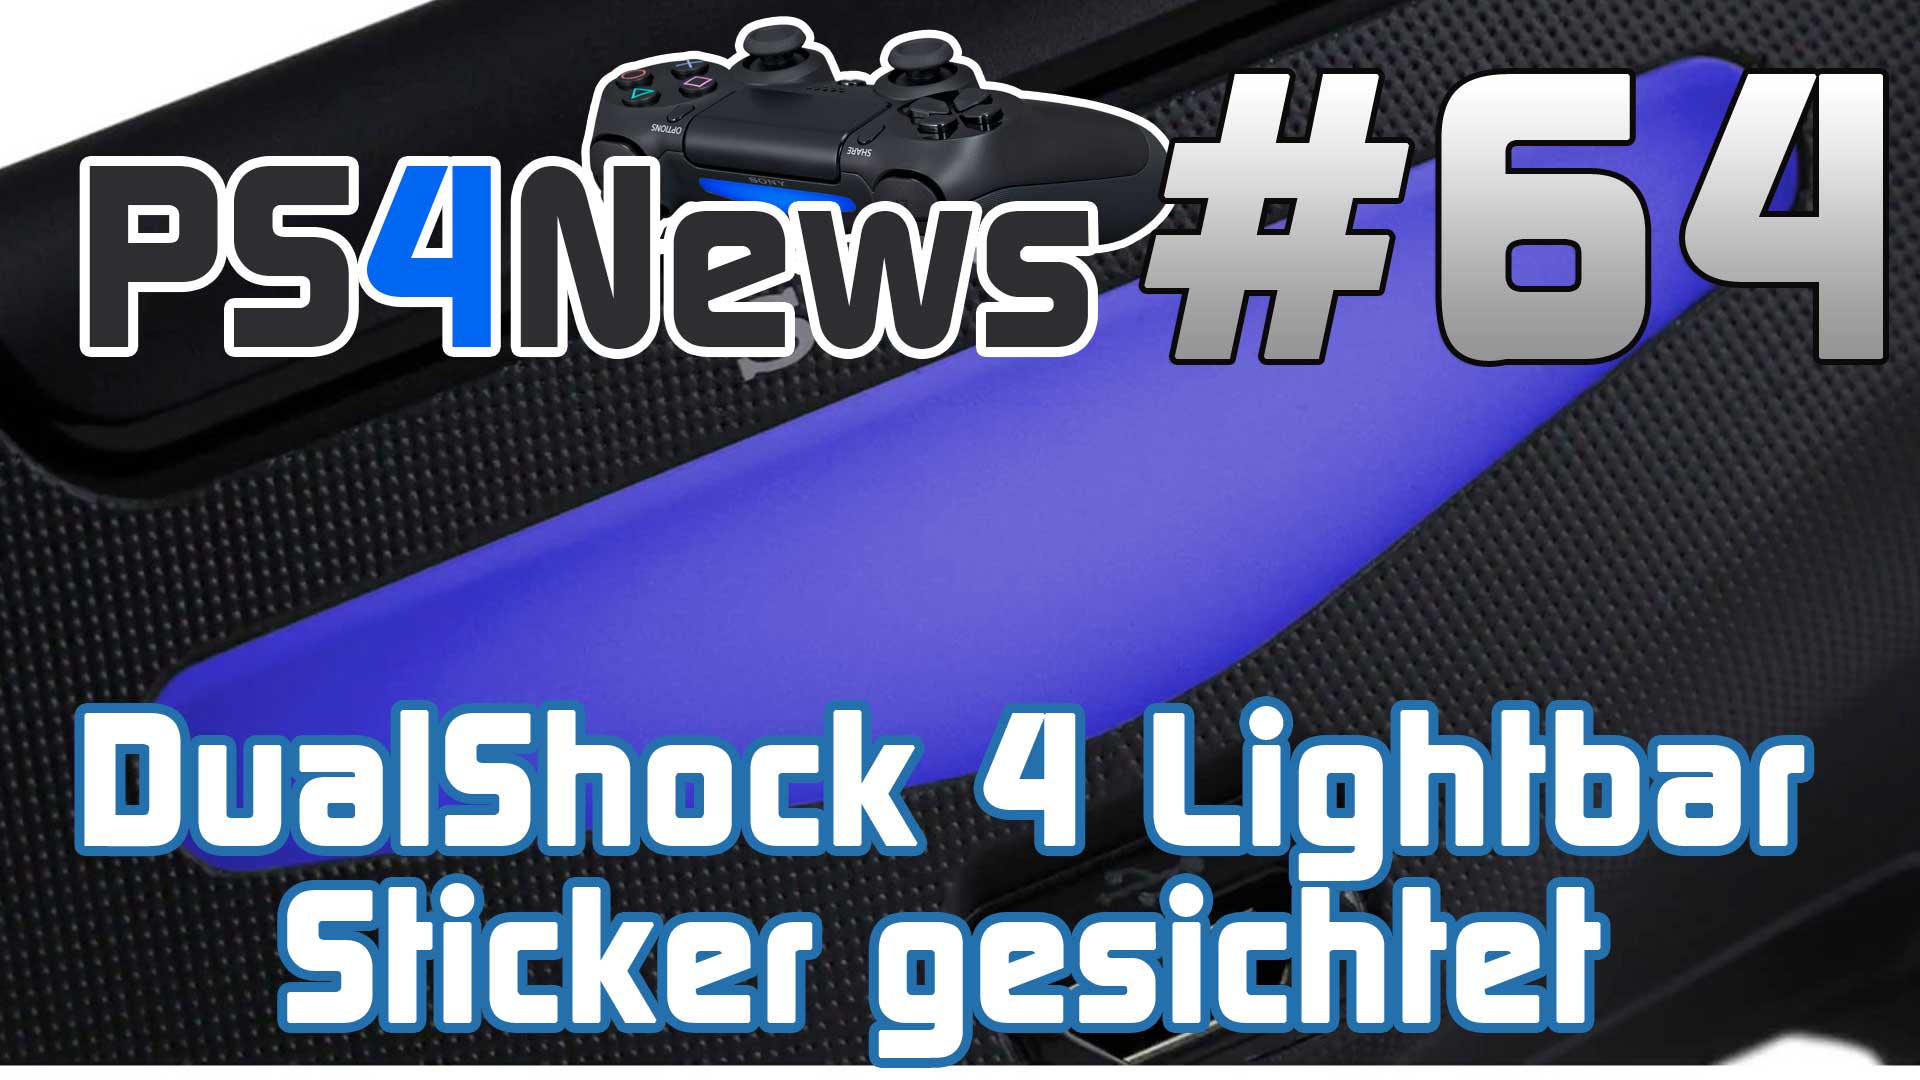 DualShock 4 Lightbar Sticker gesichtet und die PS4 Gaming News des Tages